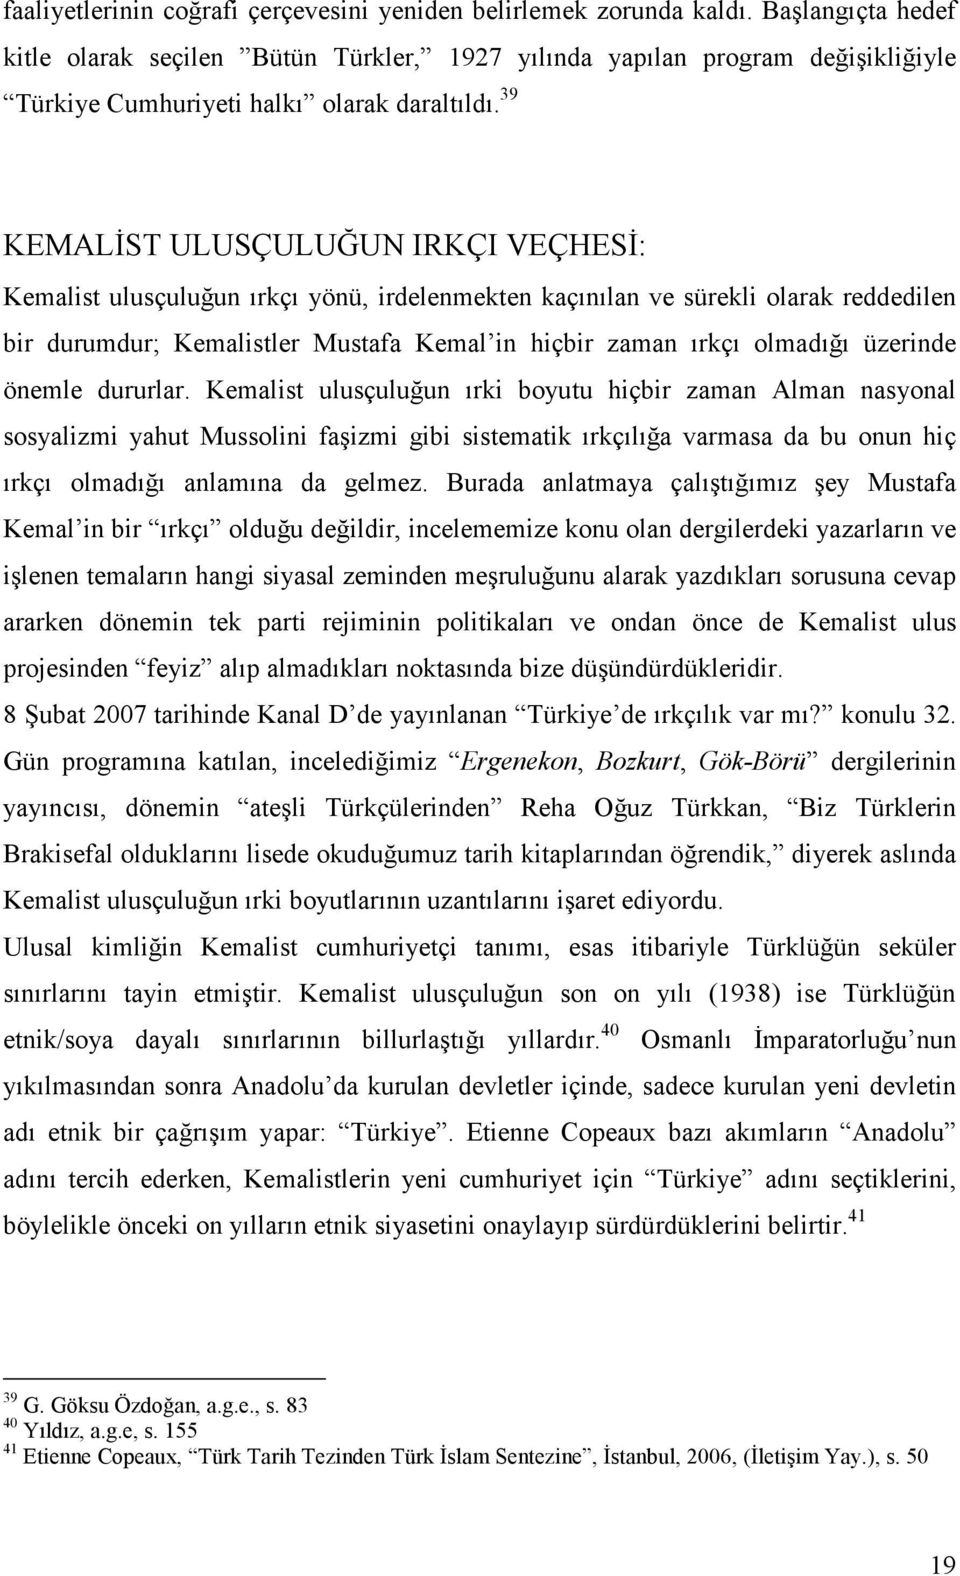 39 KEMALĐST ULUSÇULUĞUN IRKÇI VEÇHESĐ: Kemalist ulusçuluğun ırkçı yönü, irdelenmekten kaçınılan ve sürekli olarak reddedilen bir durumdur; Kemalistler Mustafa Kemal in hiçbir zaman ırkçı olmadığı